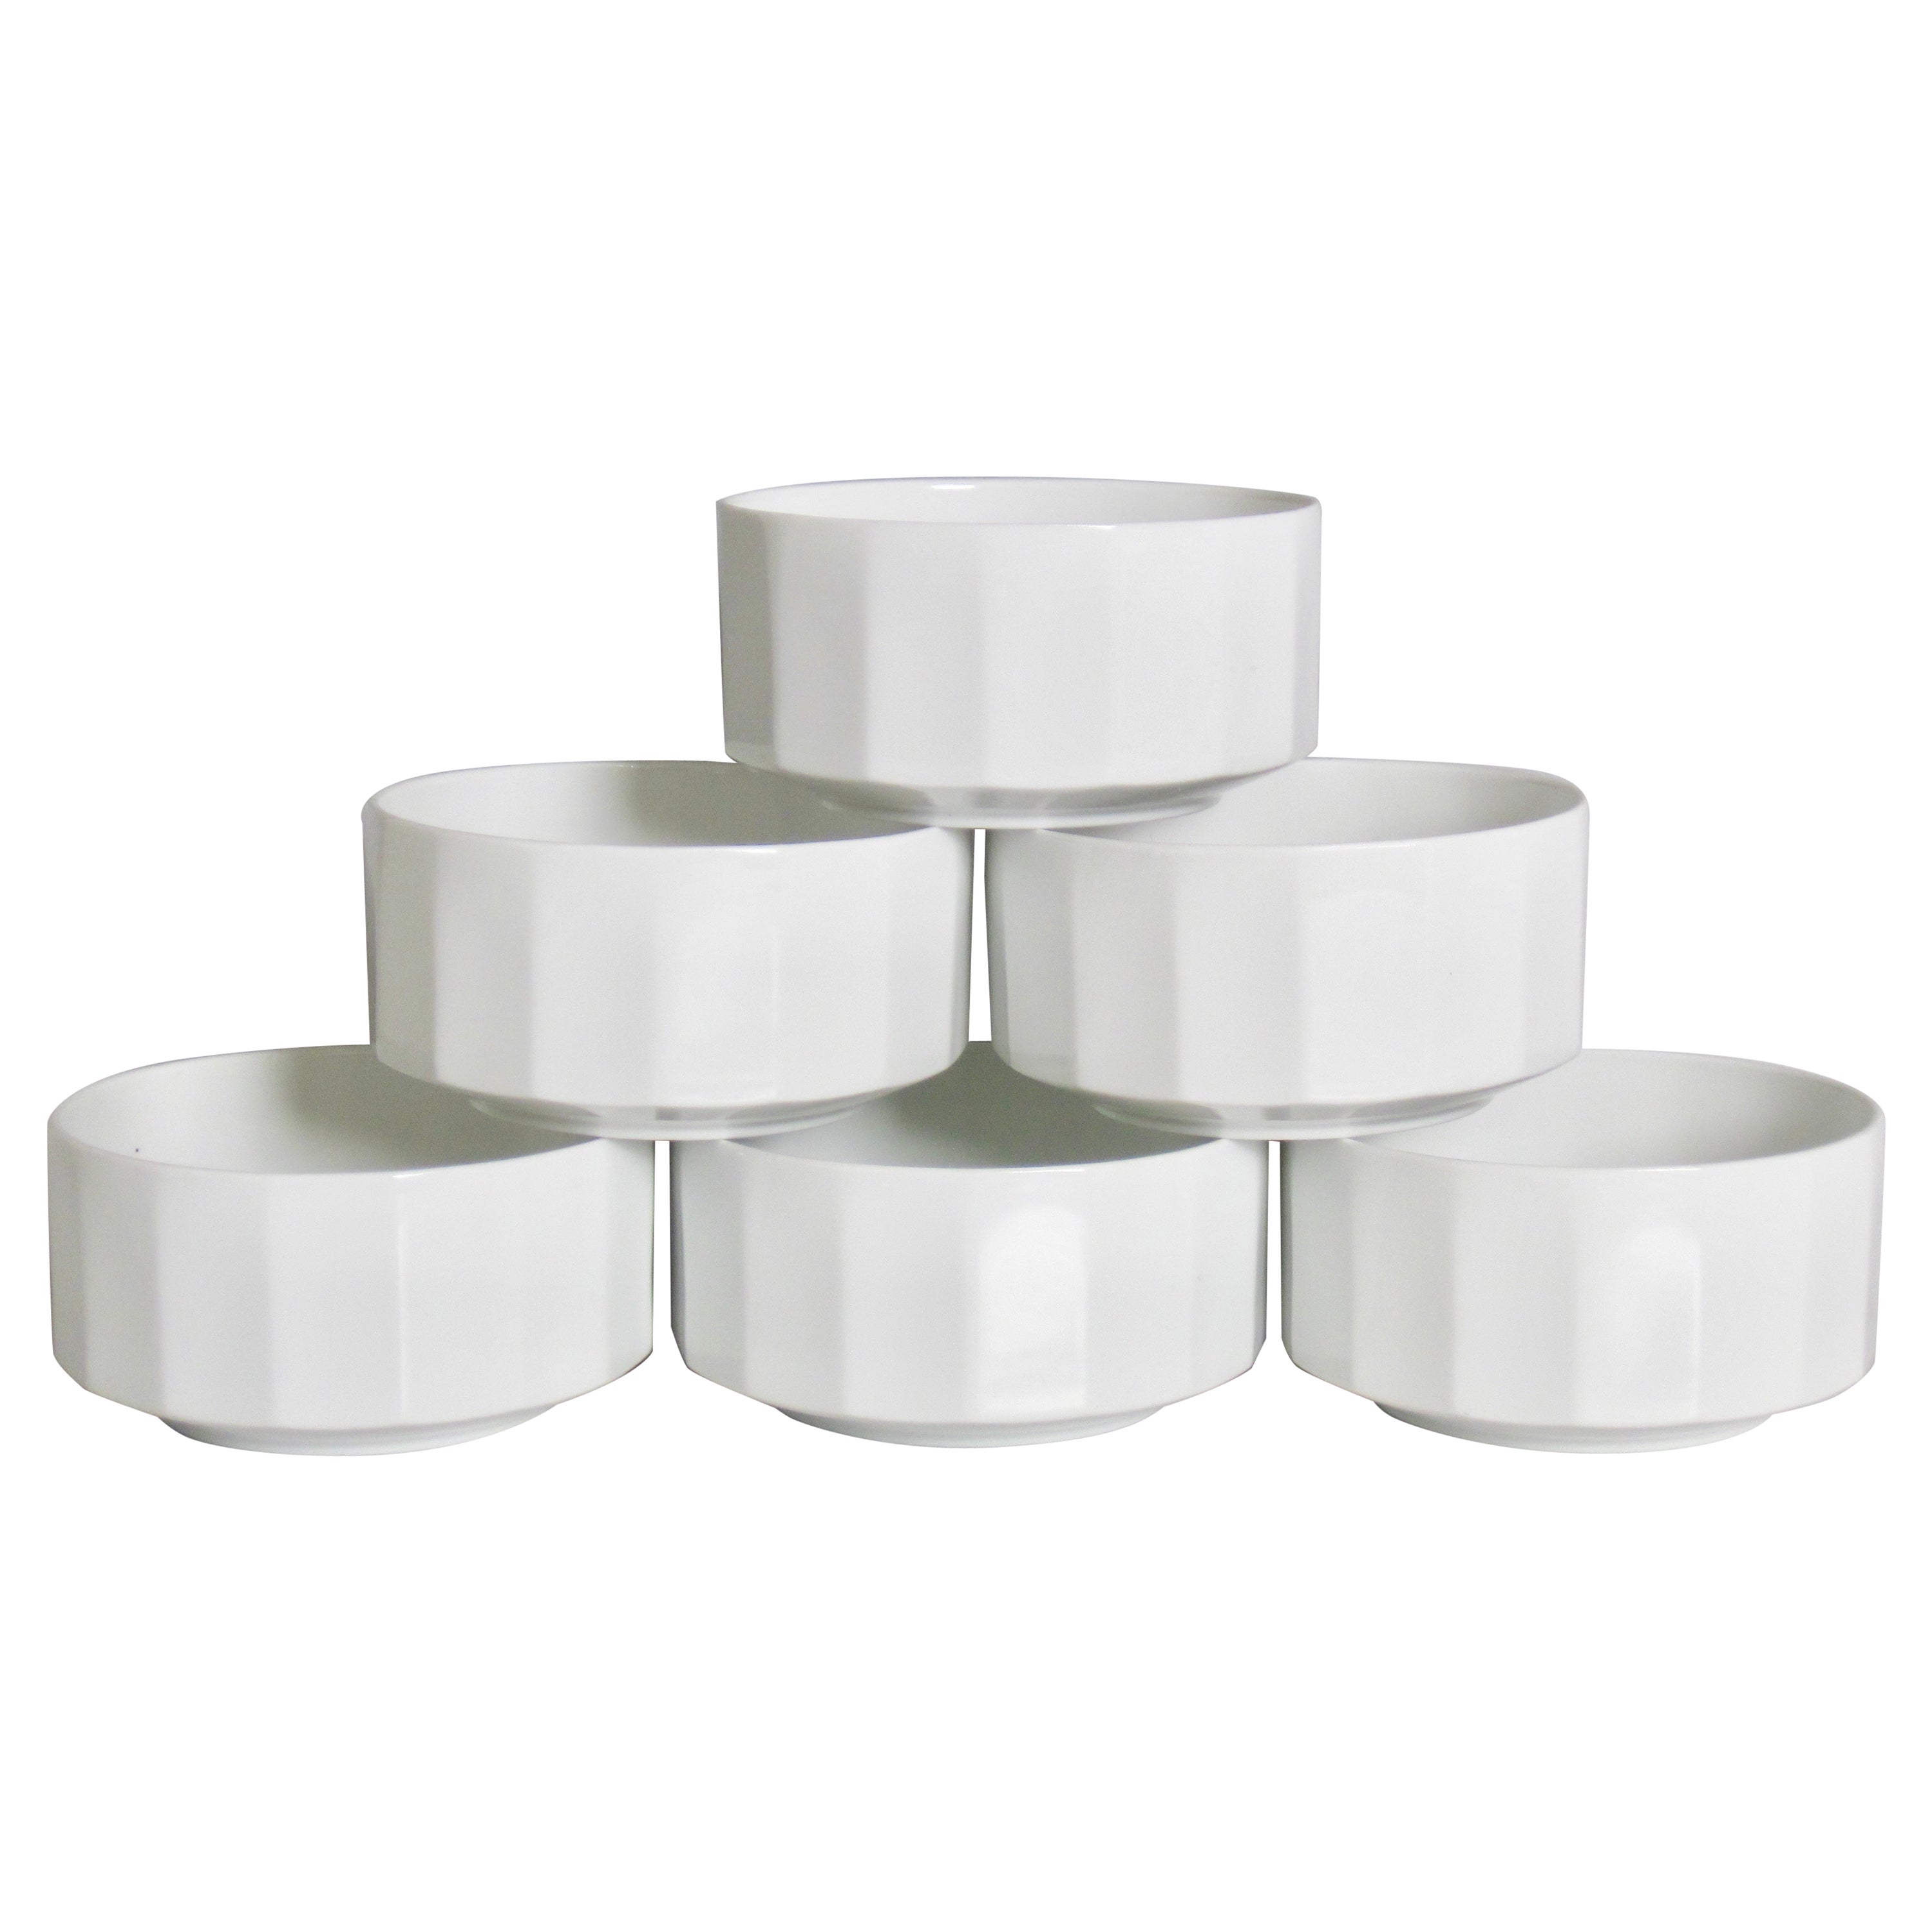 Tapio Wirkkala Rosenthal Germany Studio-Linie White Polygon Bowls, Set of Six